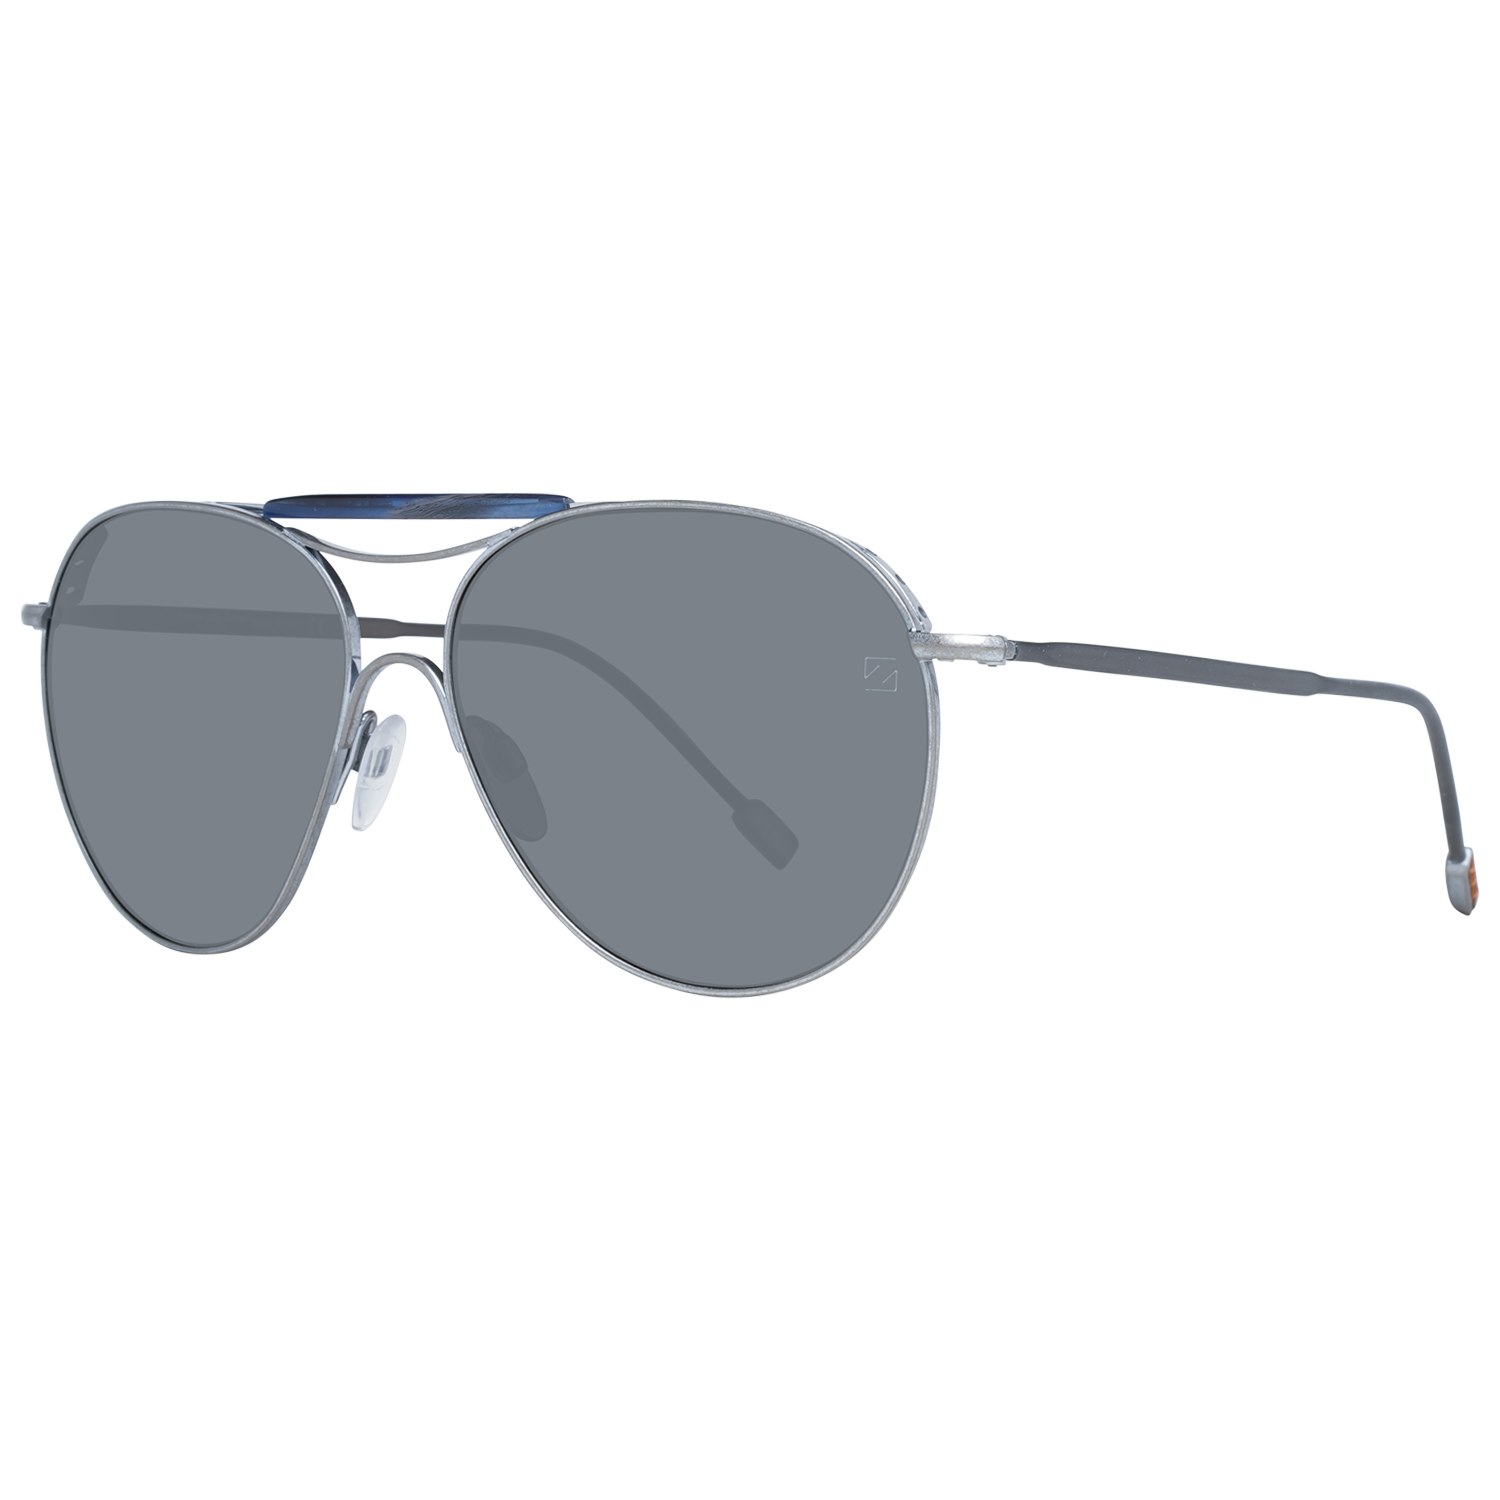 Zegna Couture Sunglasses Zegna Couture Sunglasses ZC0021 57 17A Titanium Eyeglasses Eyewear UK USA Australia 